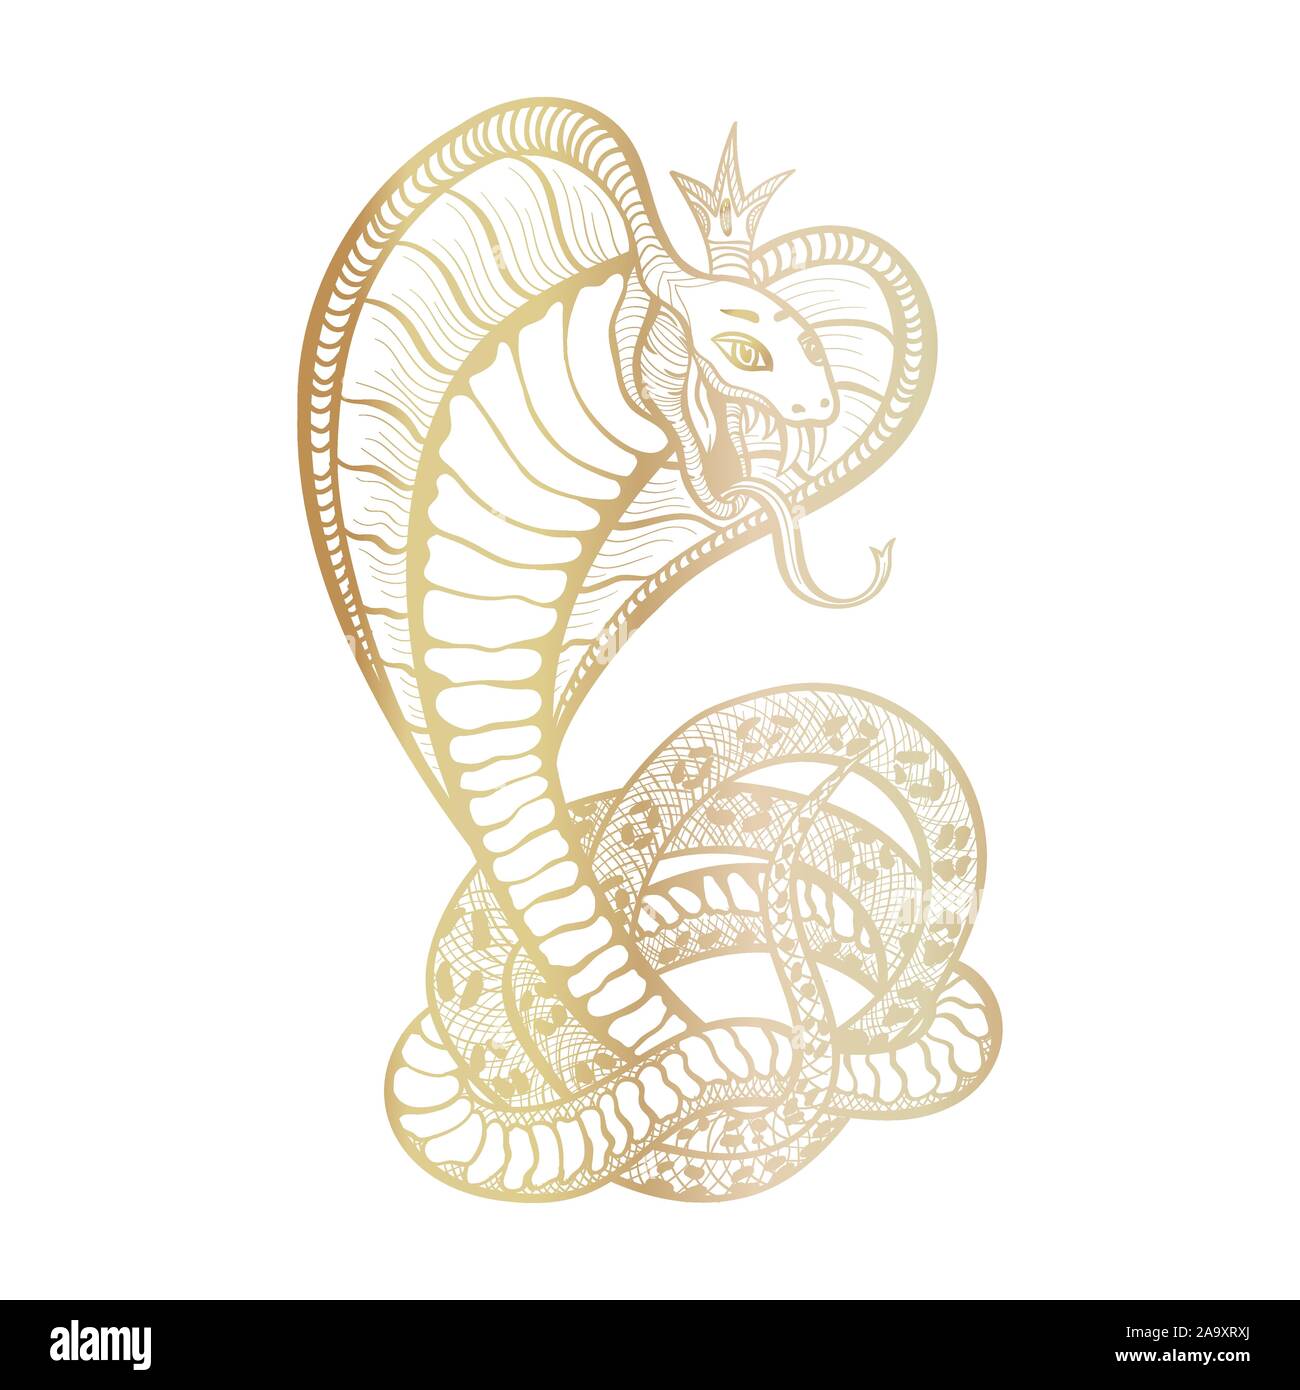 Cobra reale con cappa e corona. Golden vettore isolato viper snake, disegnati a mano il logo di lusso per la caccia, tema sport. Il Mascot tattoo modello con zanne e lingua. Carattere femminile. Illustrazione Vettoriale